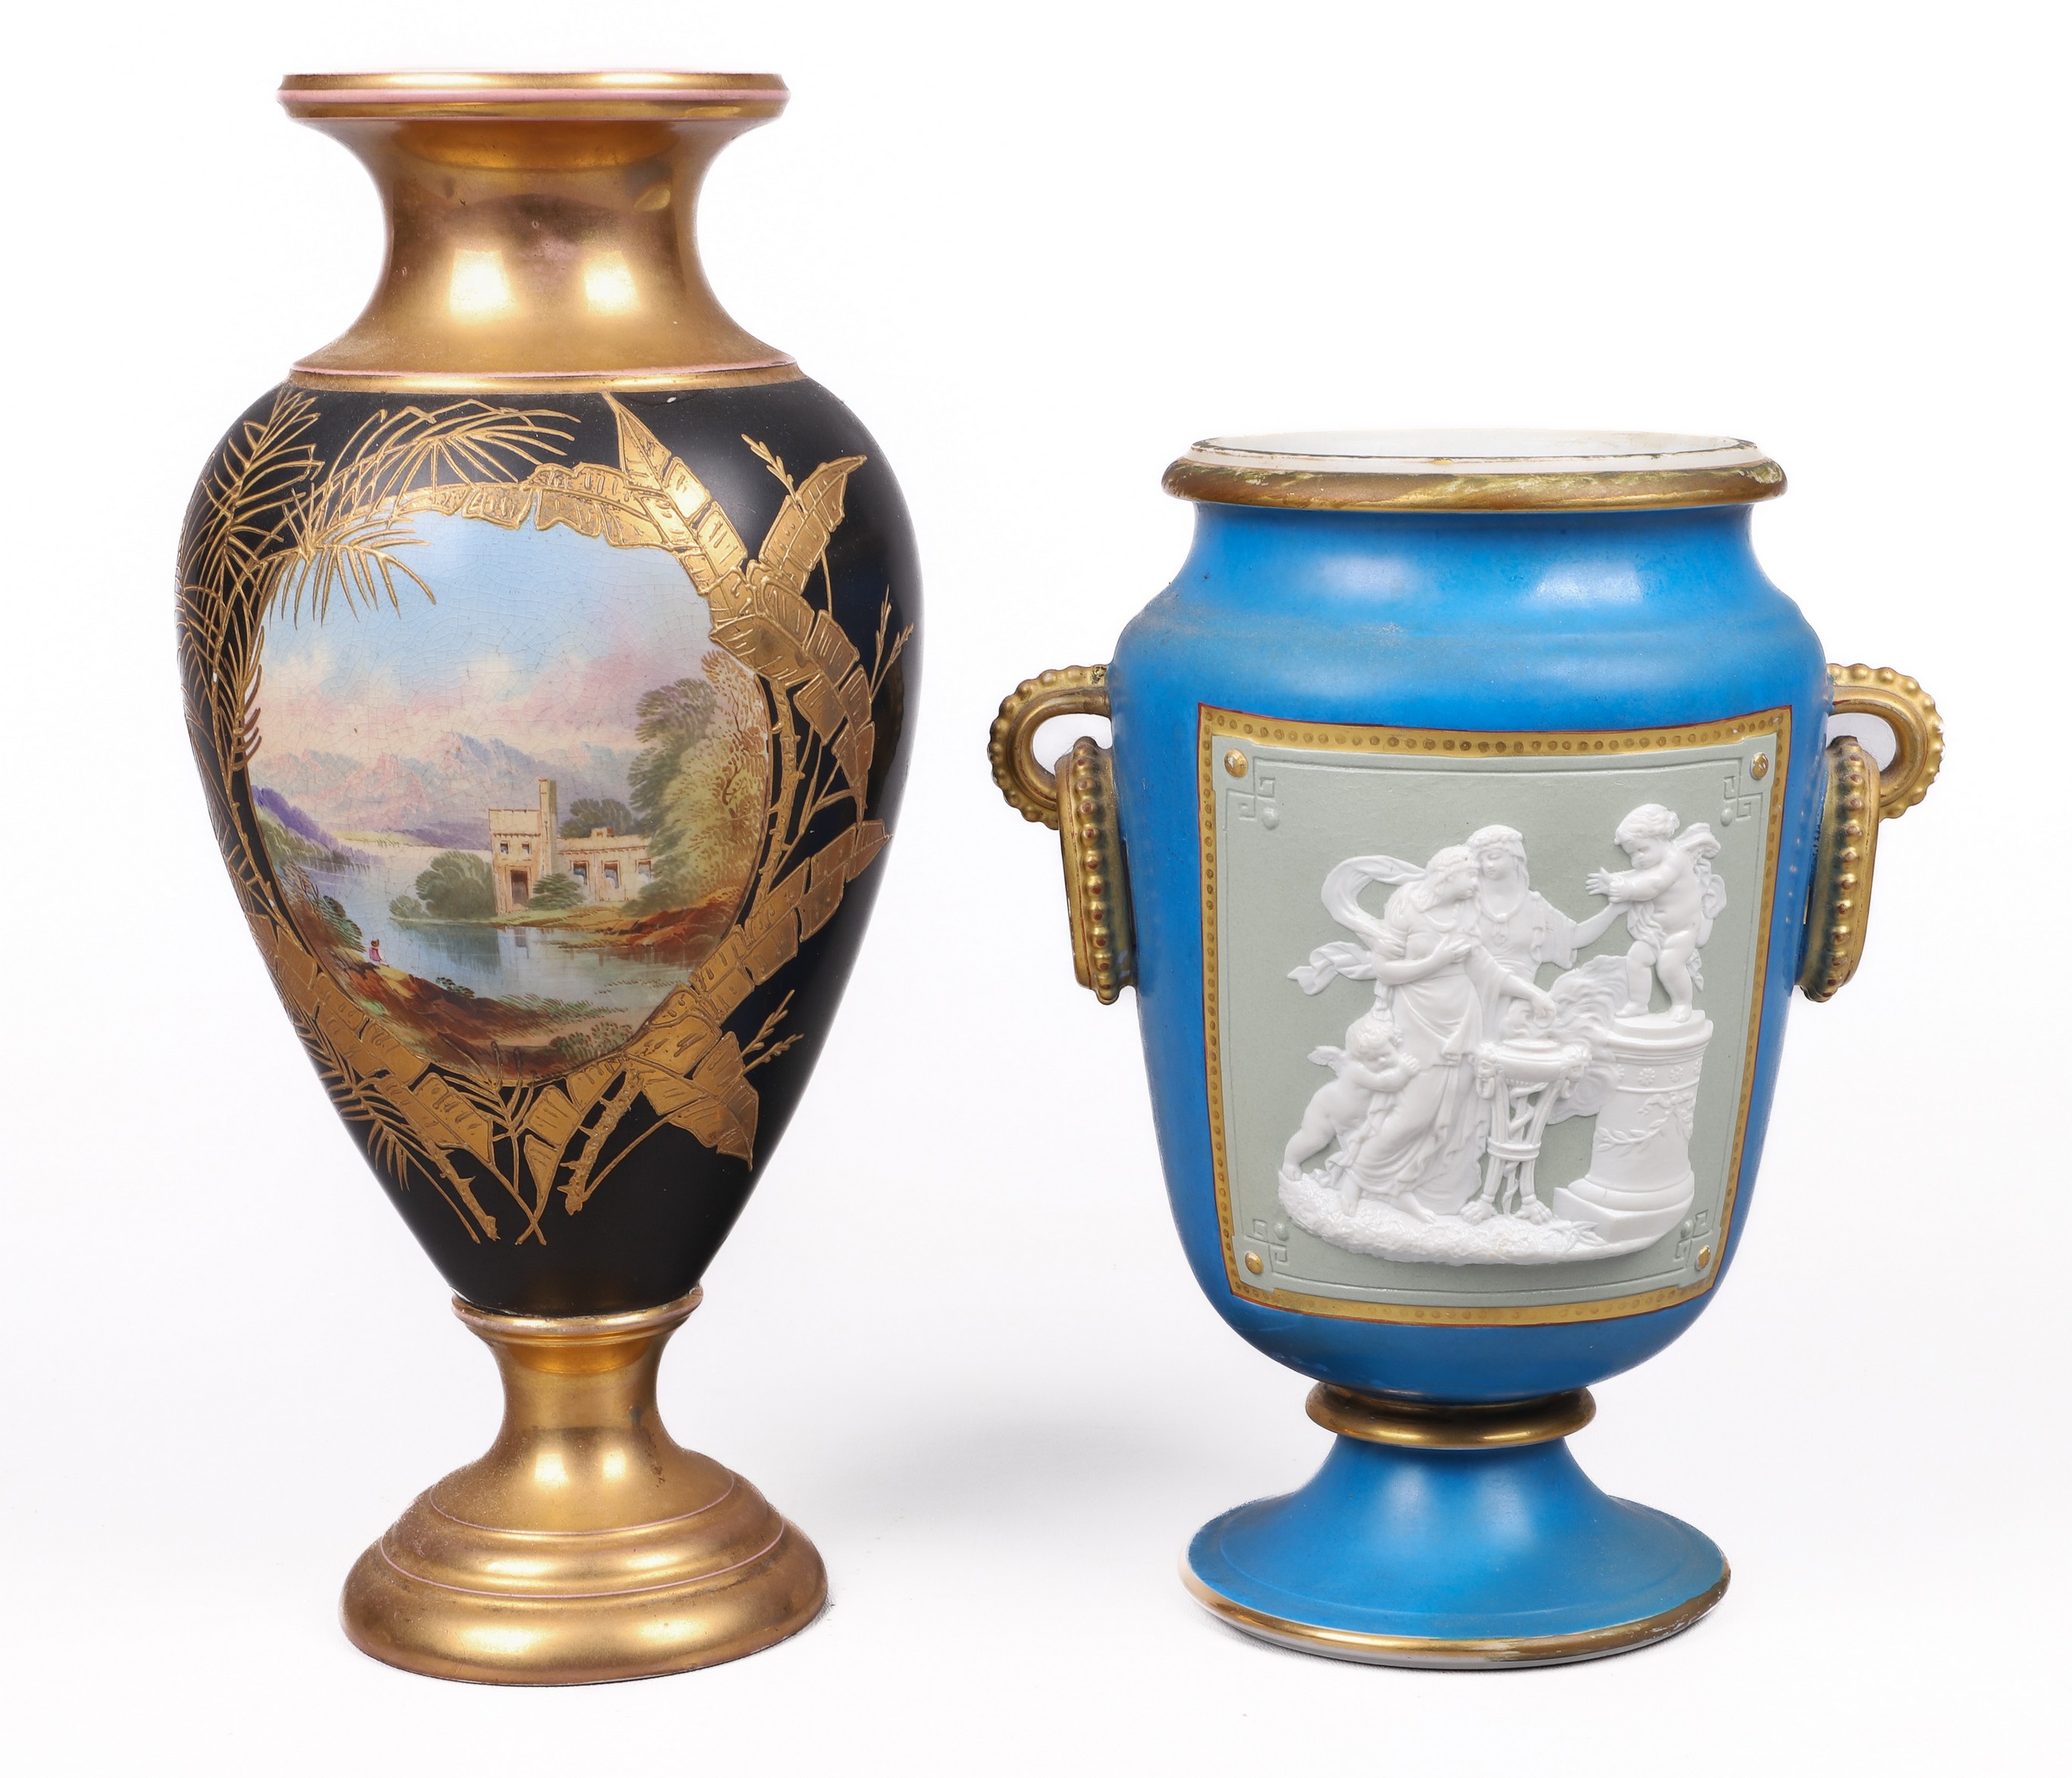  2 Porcelain urns to include Henri 2e0801